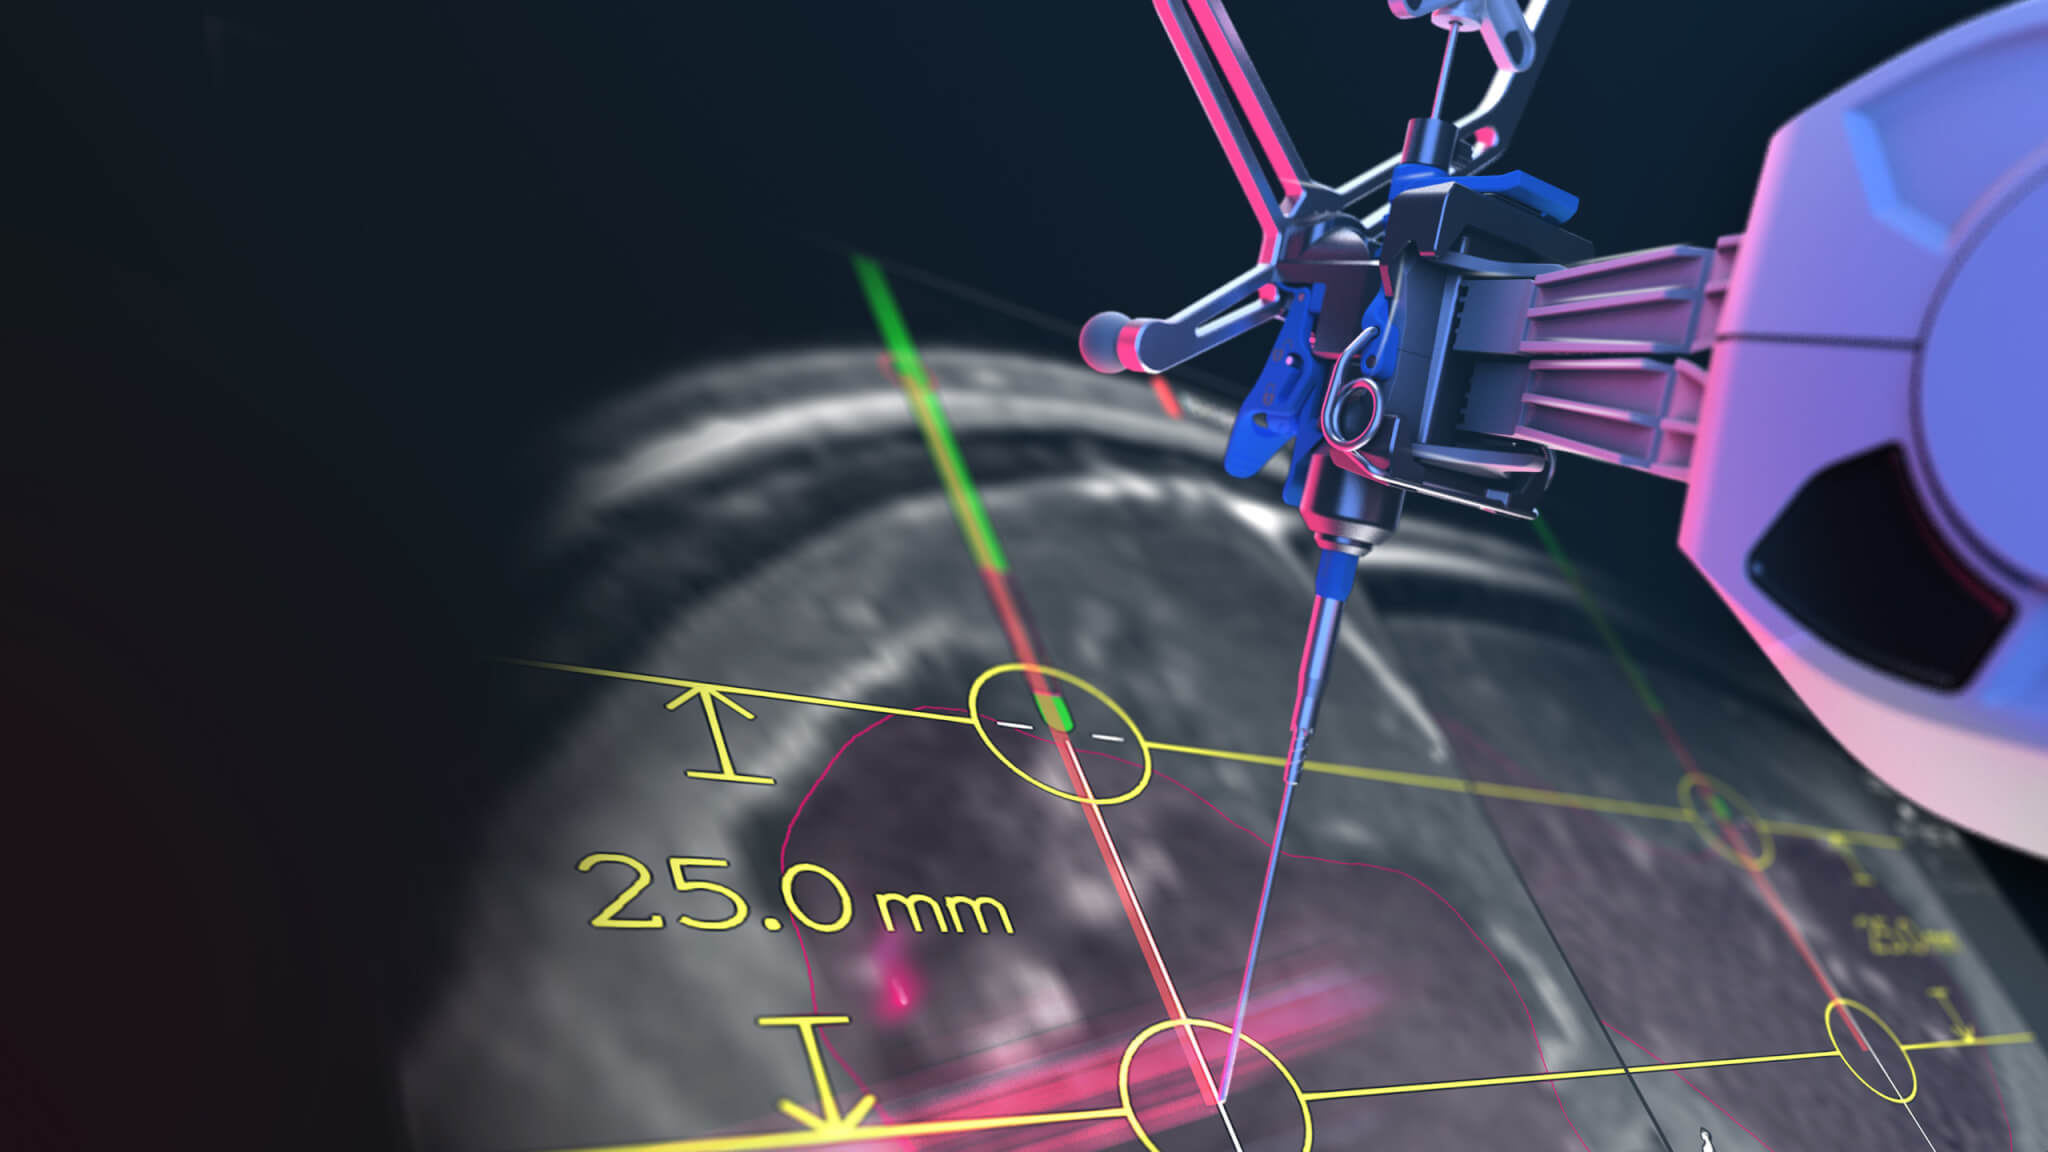 Роботизированный кронштейн для черепно-мозговой хирургии Cirq направляет свой модуль на визуализированное изображение экрана программного обеспечения для хирургической навигации